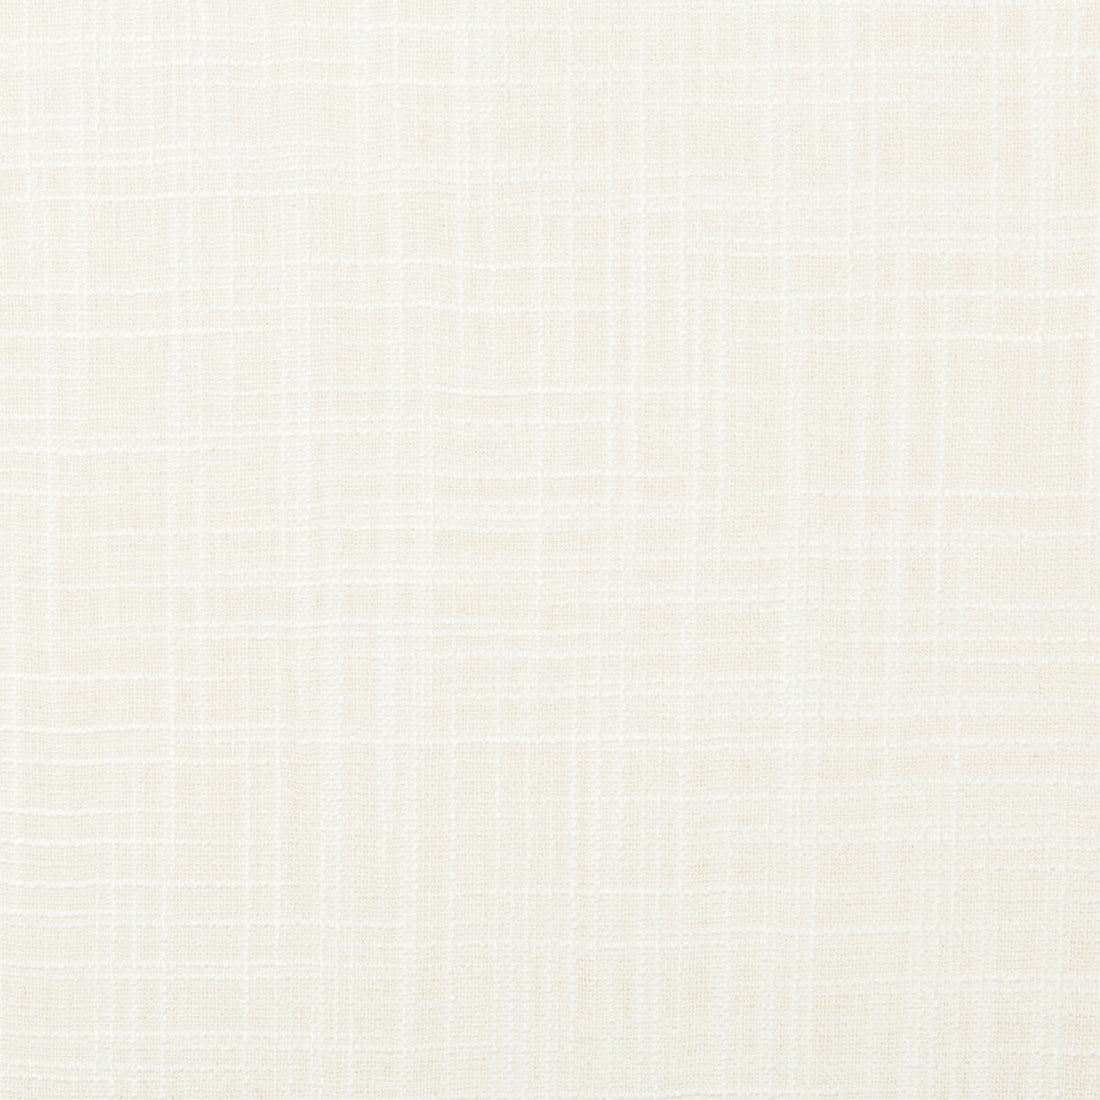 Kravet Basics fabric in 4674-1 color - pattern 4674.1.0 - by Kravet Basics